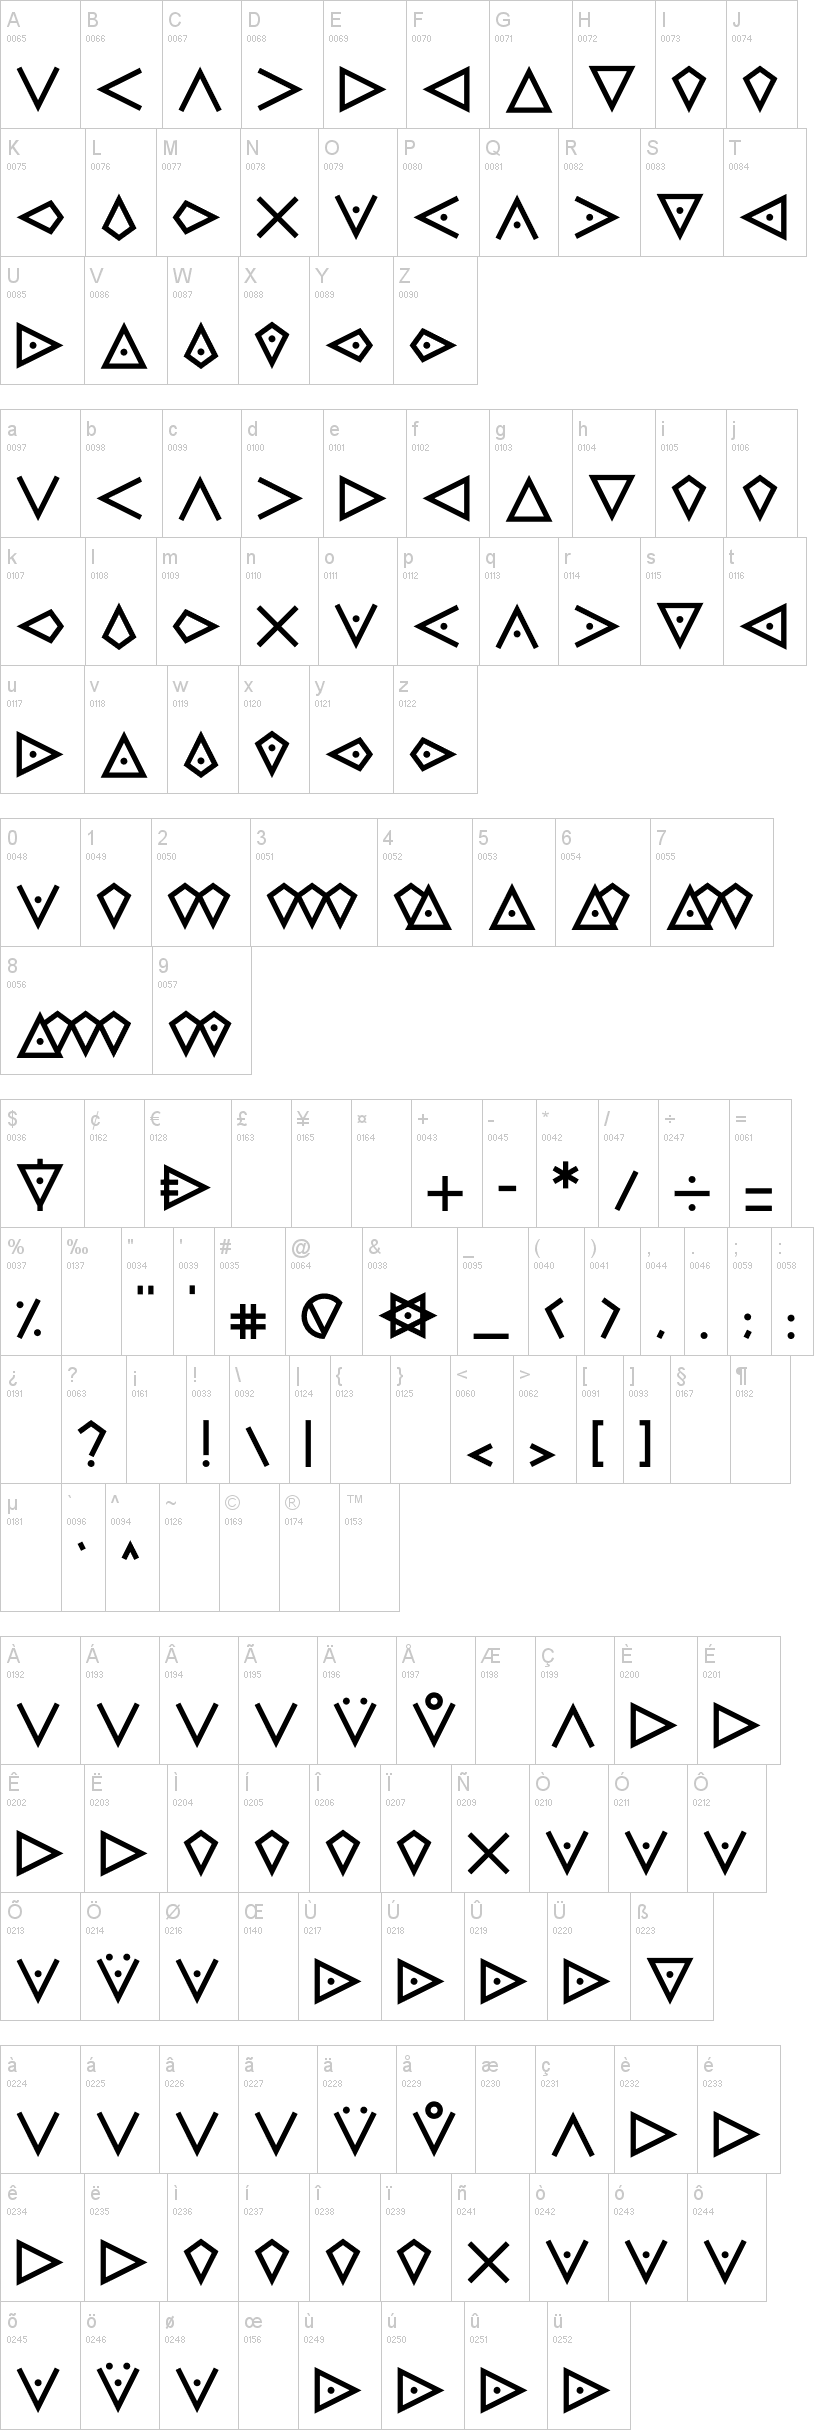 Templars Cipher Plus Font | dafont.com